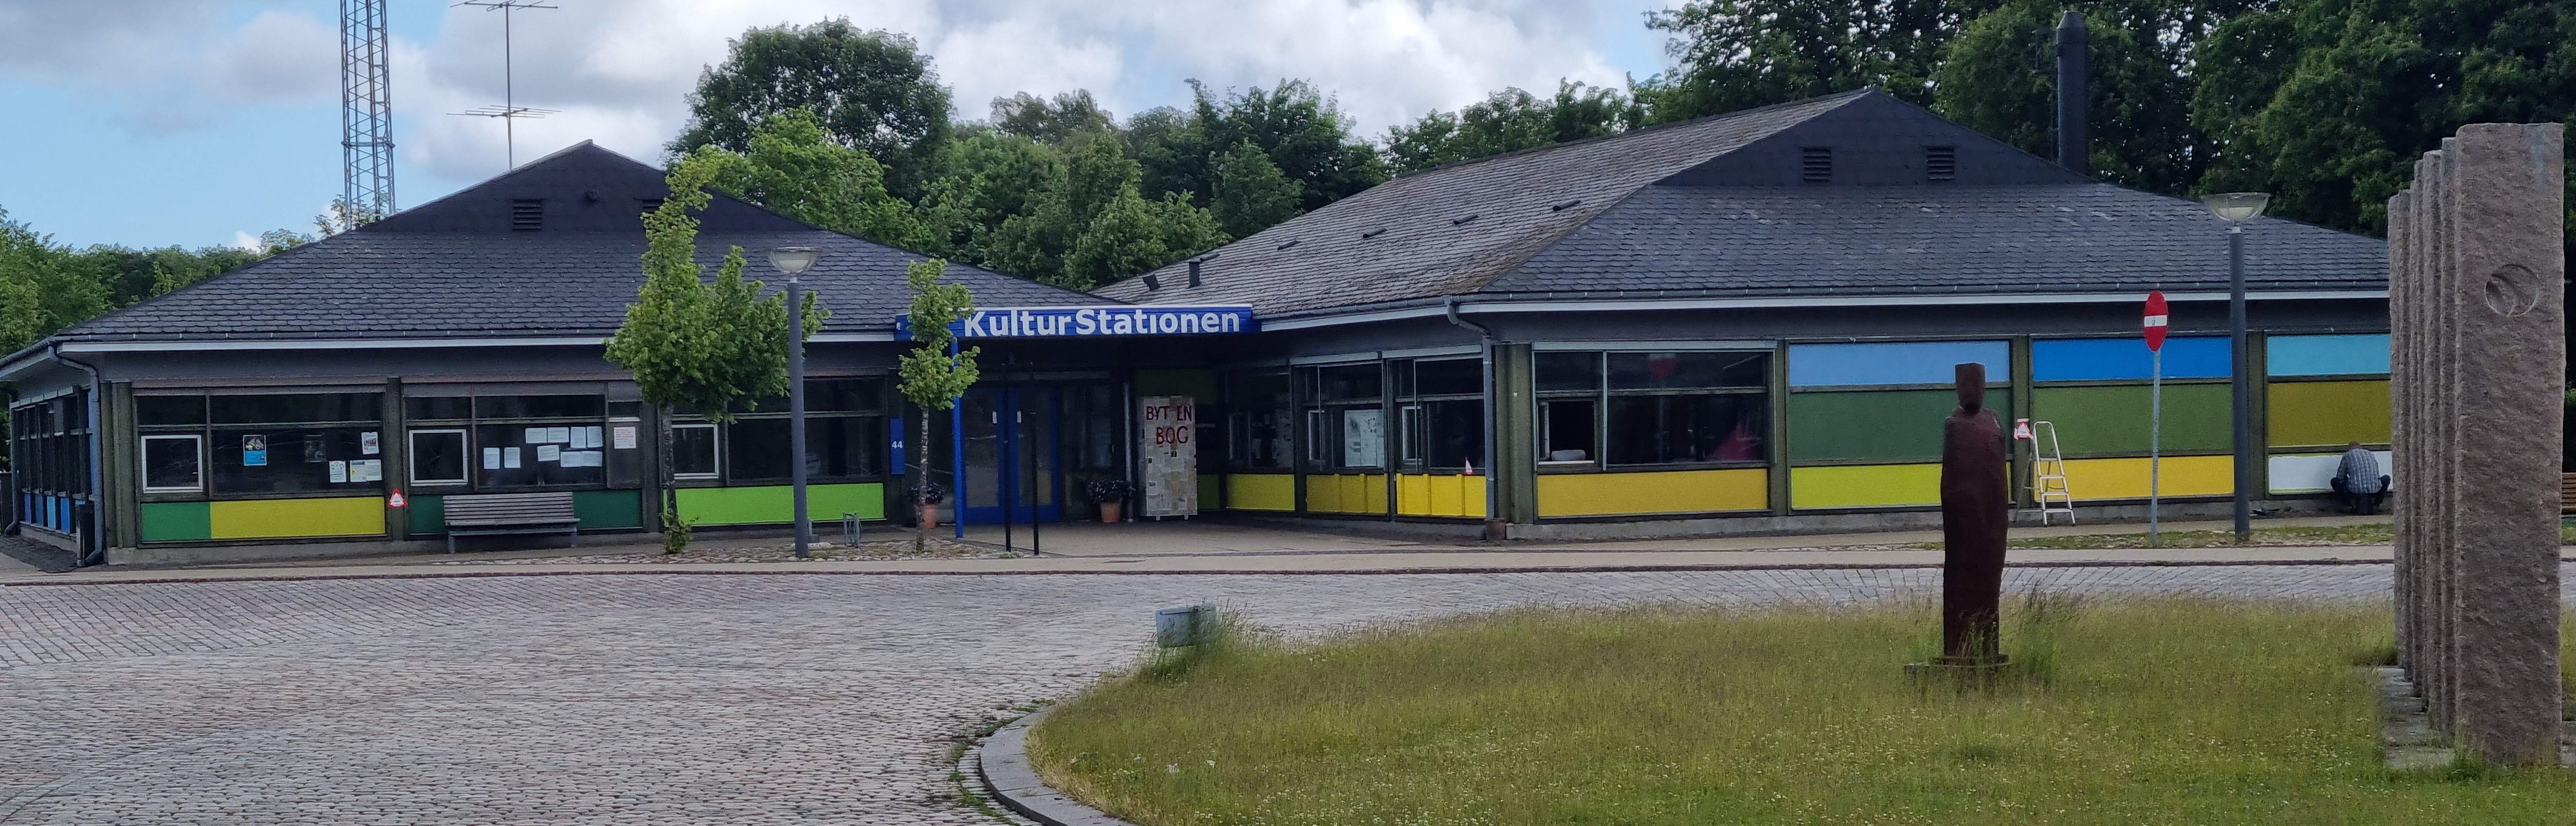 Kulturstationen i Humlebæk